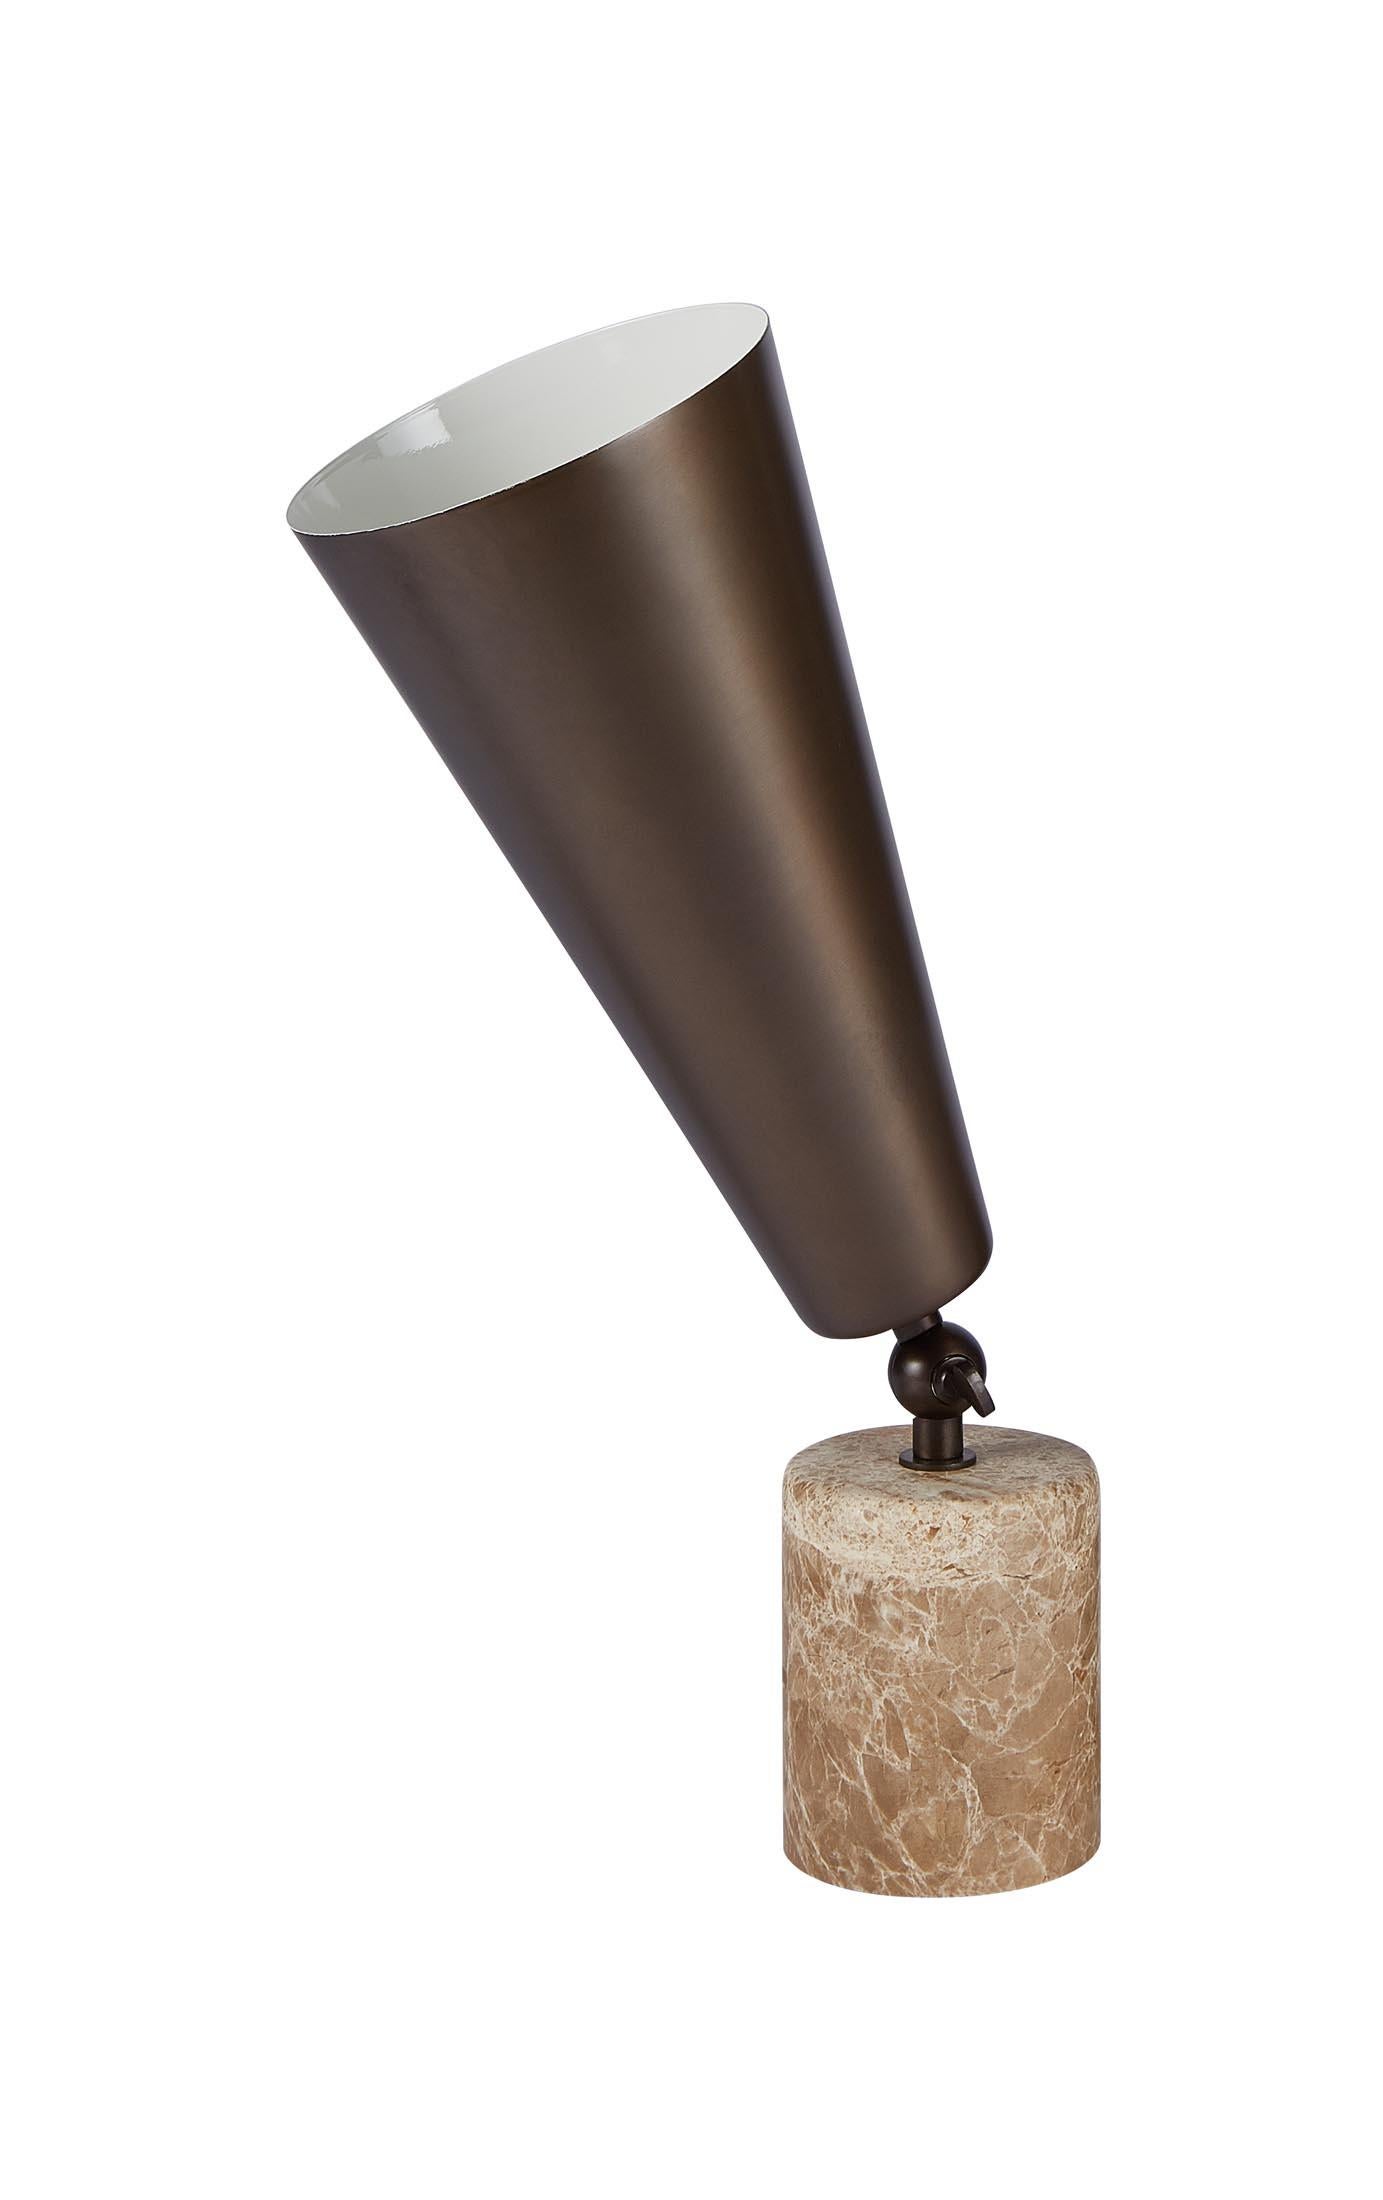 Tato Italia 'Vox' Table Lamp in Portoro Marble and Brass For Sale 4